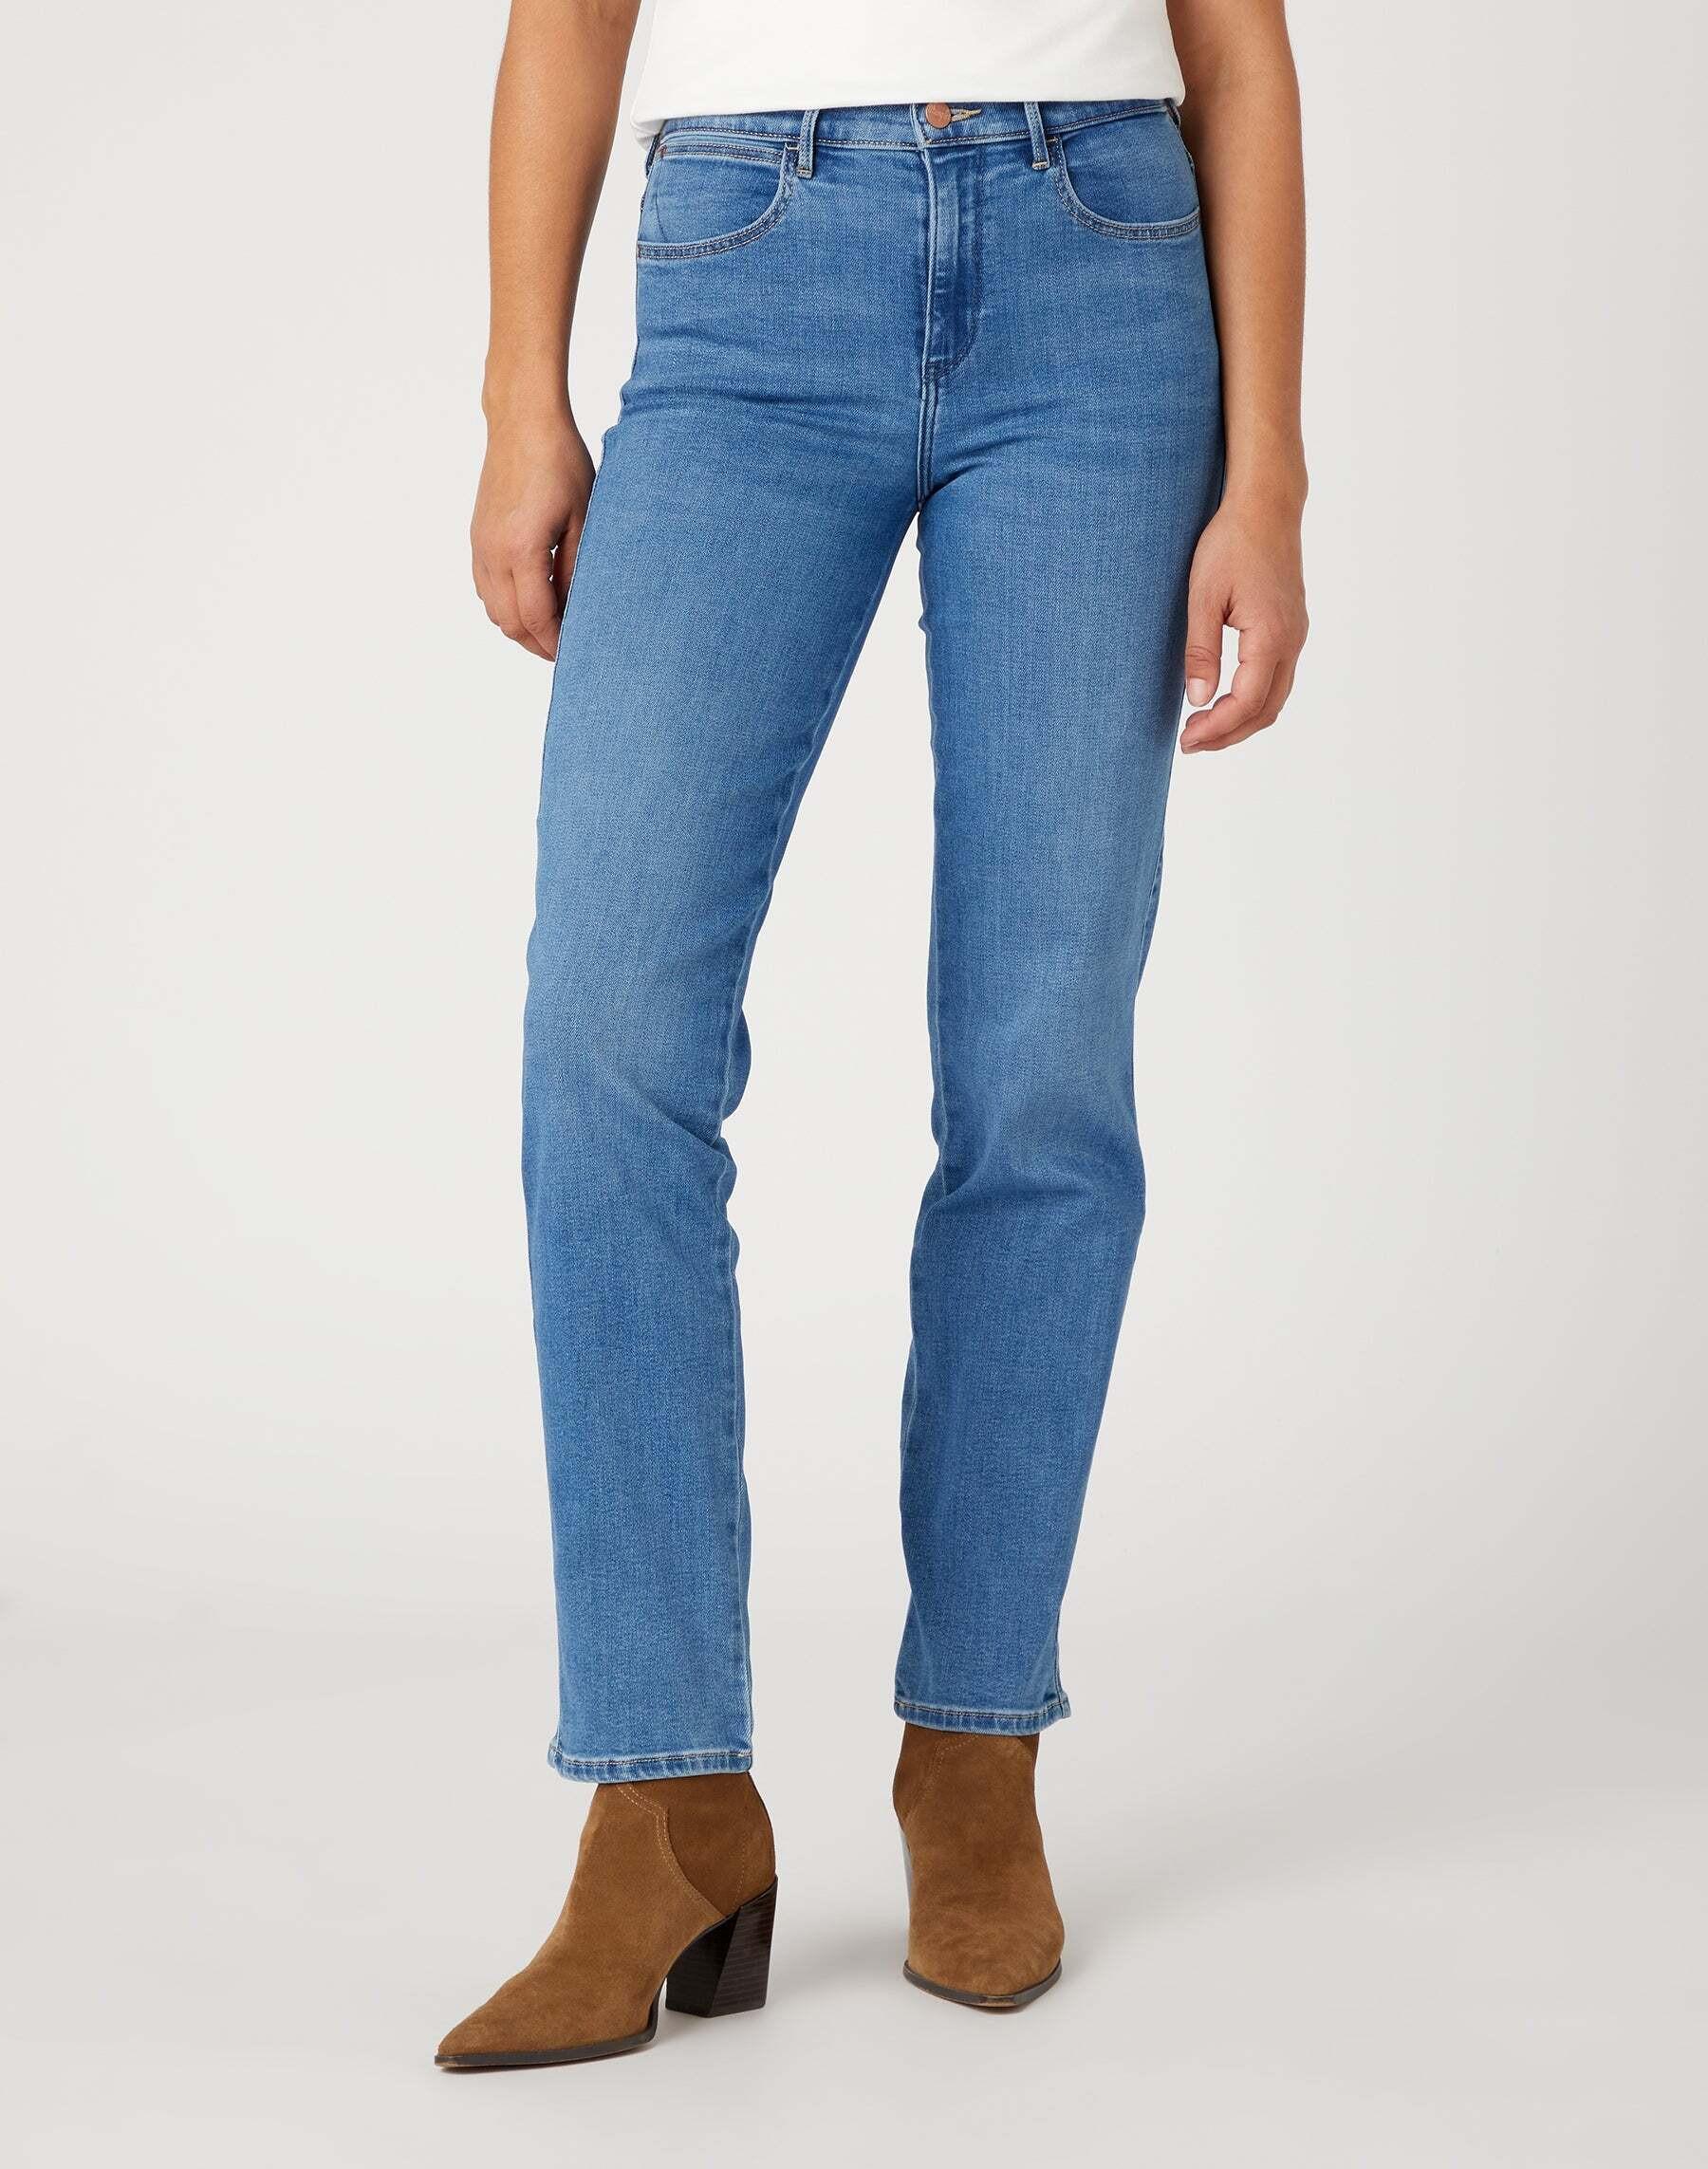 Jeans Straight Damen Hellblau L30/W31 von Wrangler